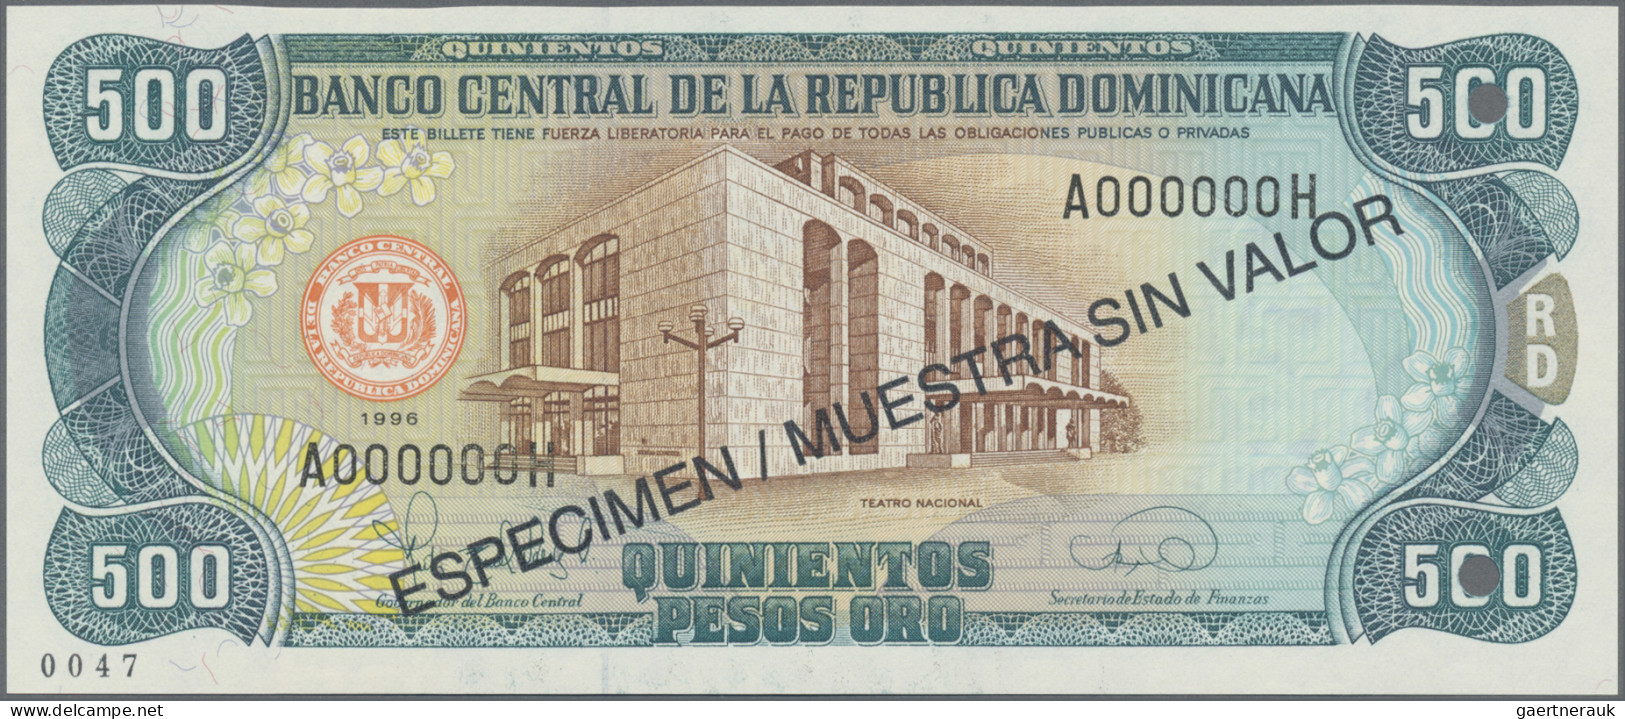 Dominican Republic: Banco Central de la República Dominicana, huge lot with 33 S